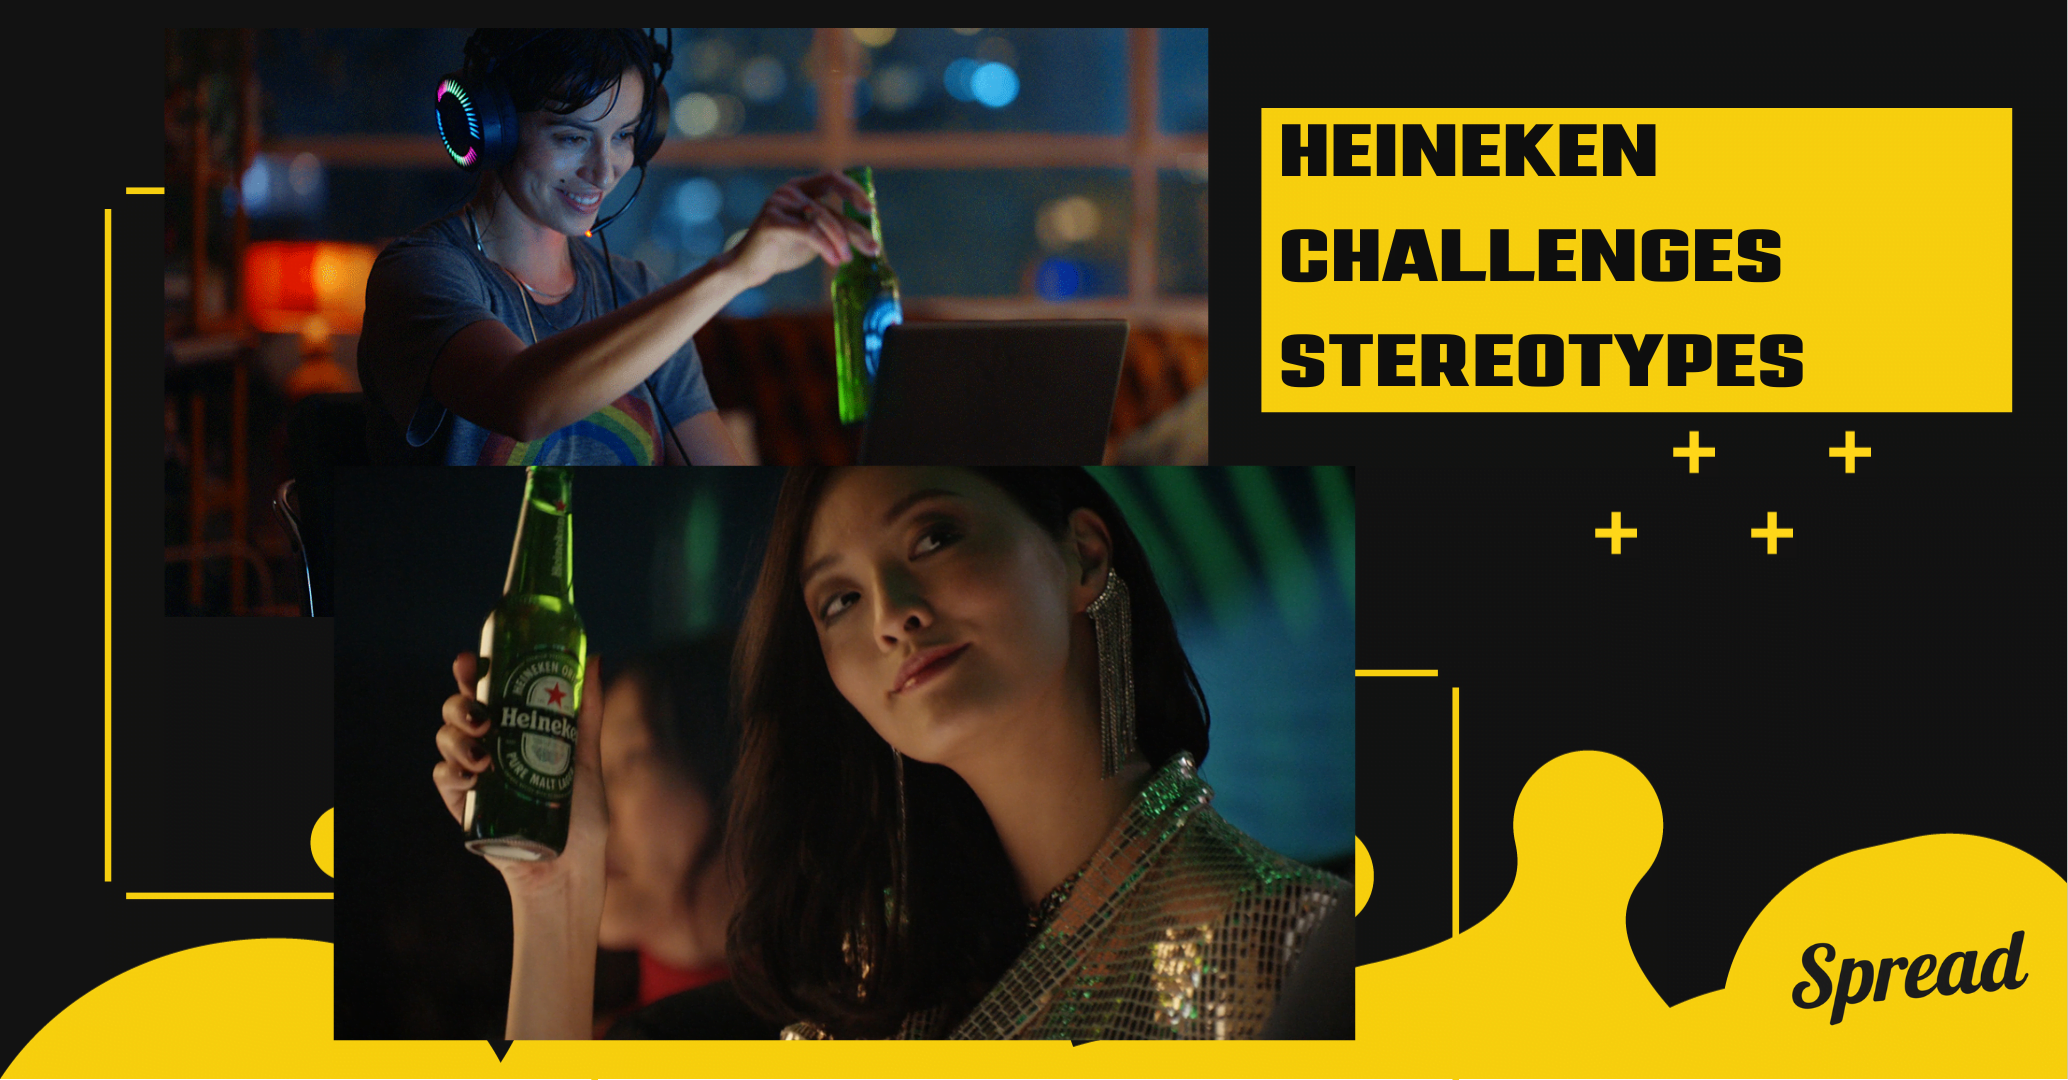 Heineken challenges stereotypes